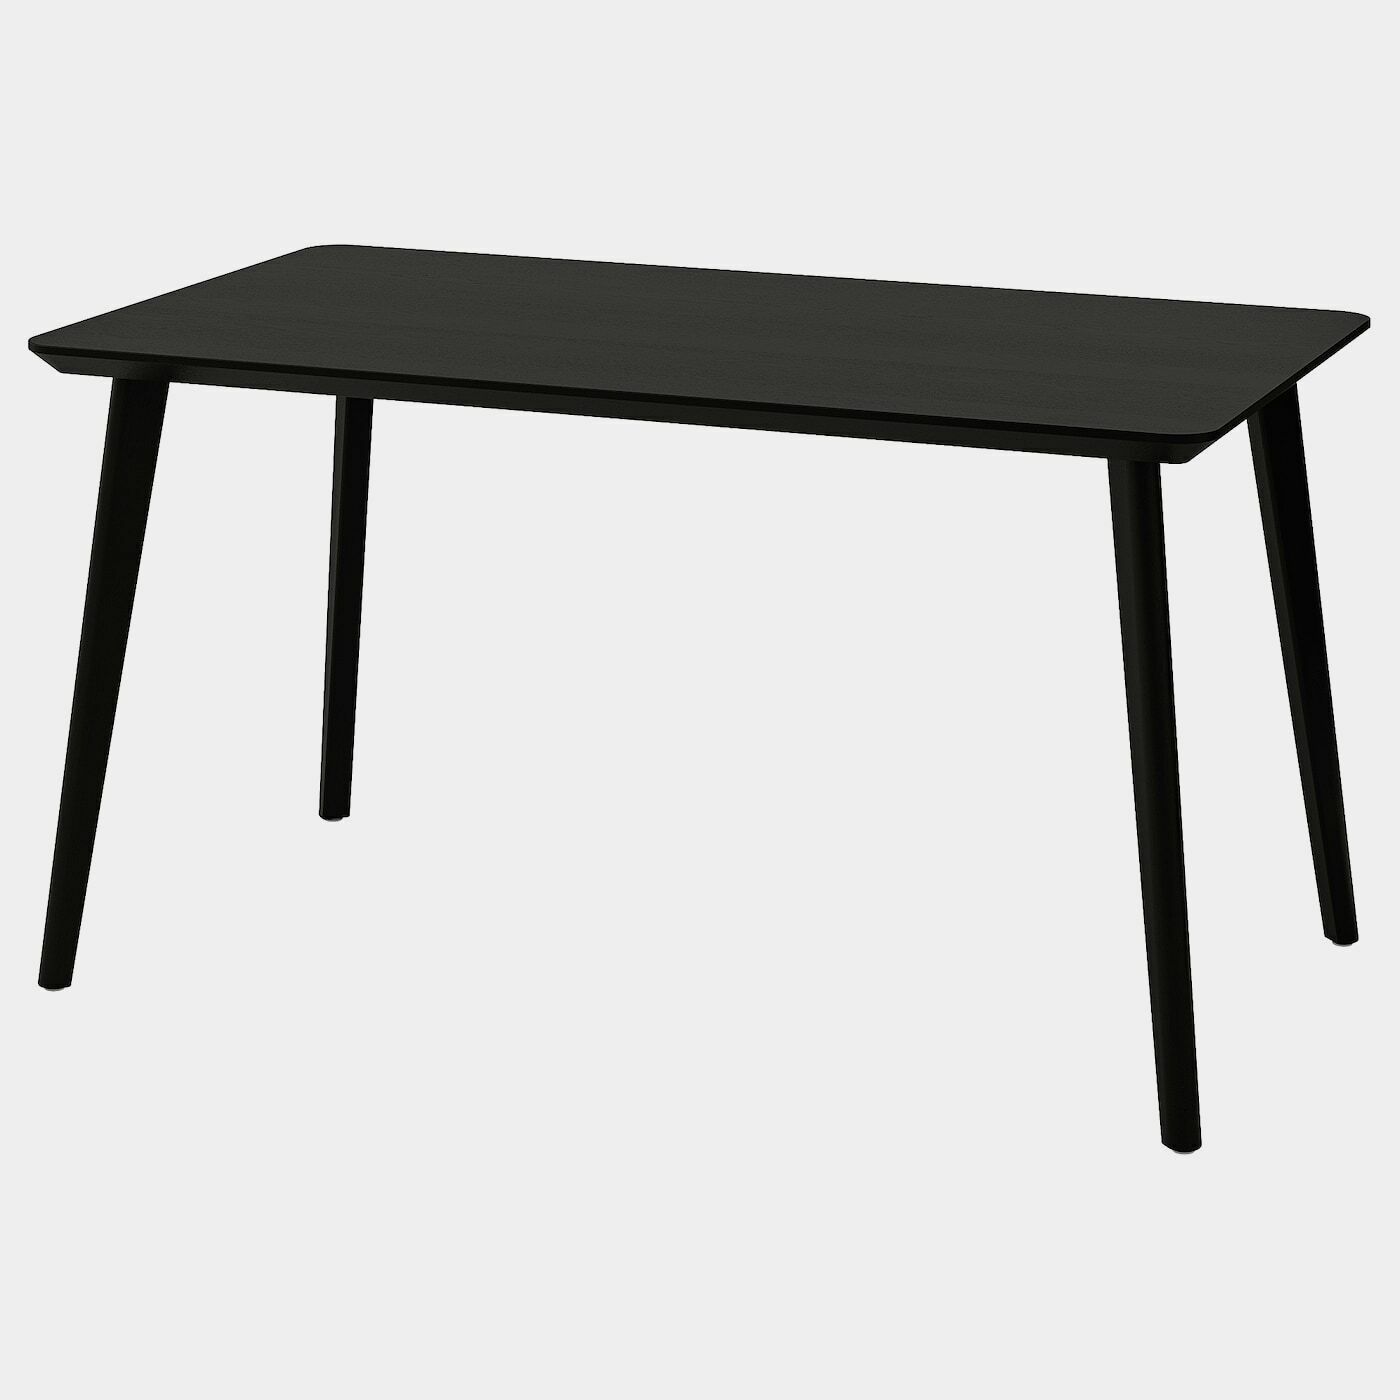 LISABO Tisch  - Esstische - Möbel Ideen für dein Zuhause von Home Trends. Möbel Trends von Social Media Influencer für dein Skandi Zuhause.